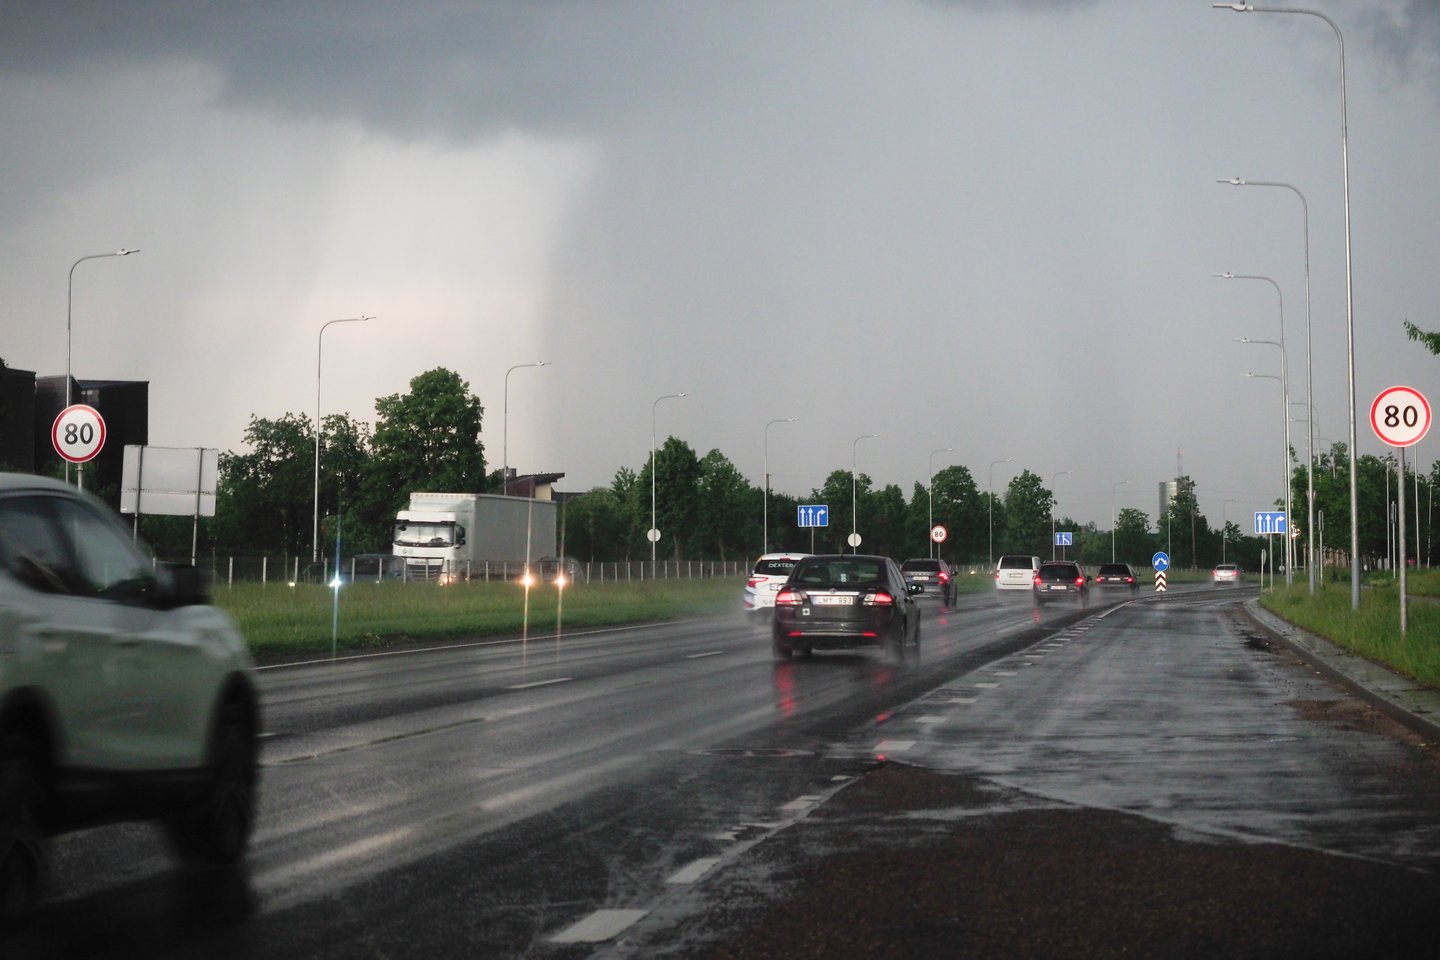 Iškritęs lietaus vanduo kaupiasi ant kelio, todėl išauga tikimybė patirti akvaplanavimą (akvaplaningą), kurio metu automobilis praranda sukibimą su kelio danga.<br>V.Ščiavinsko nuotr.